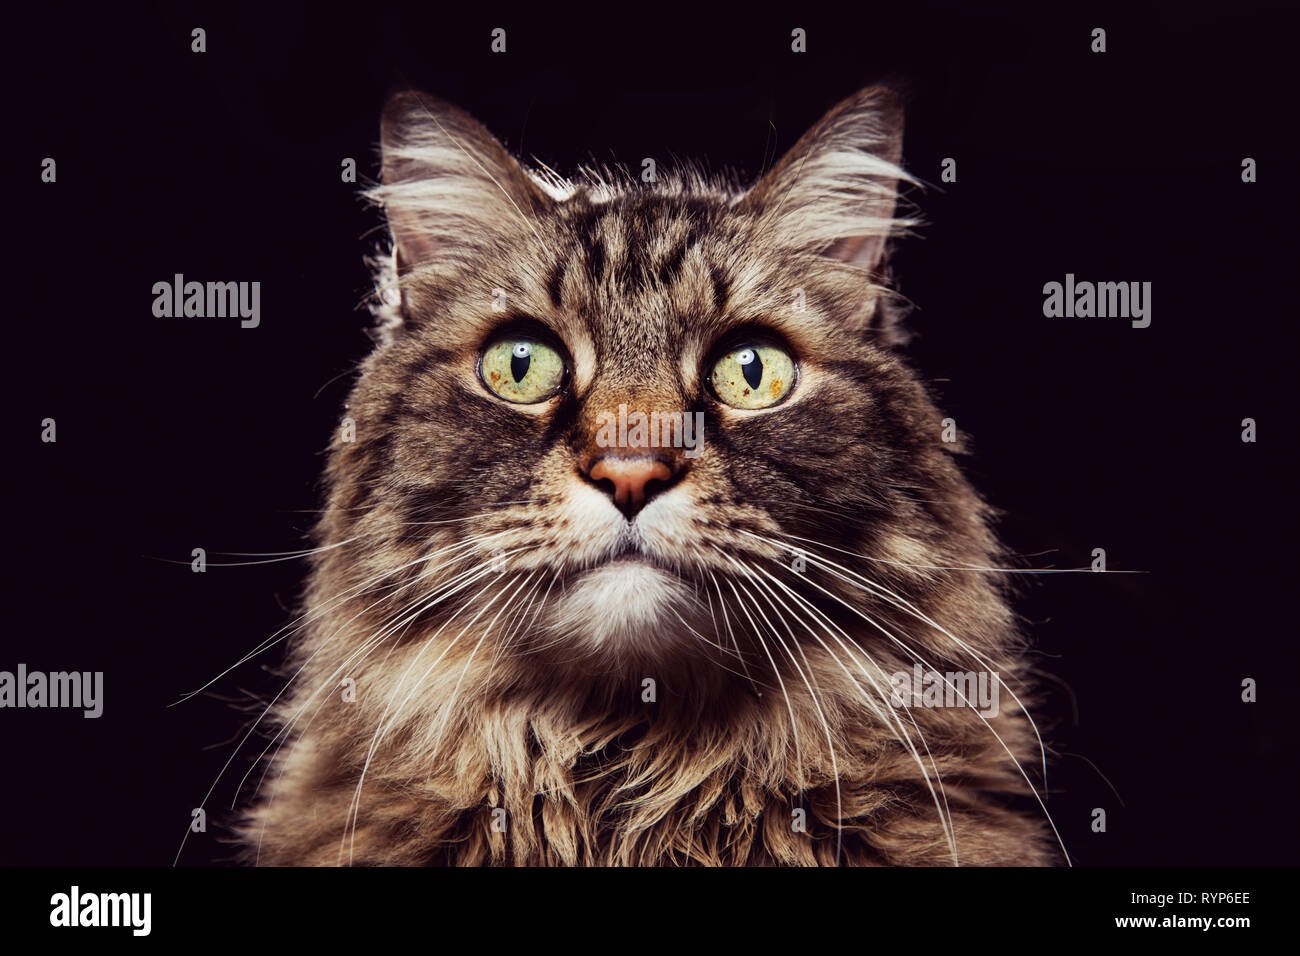 Close-up retrato de estudio de un gato atigrado marrón mirando directamente a la cámara sobre un fondo negro. Foto de stock